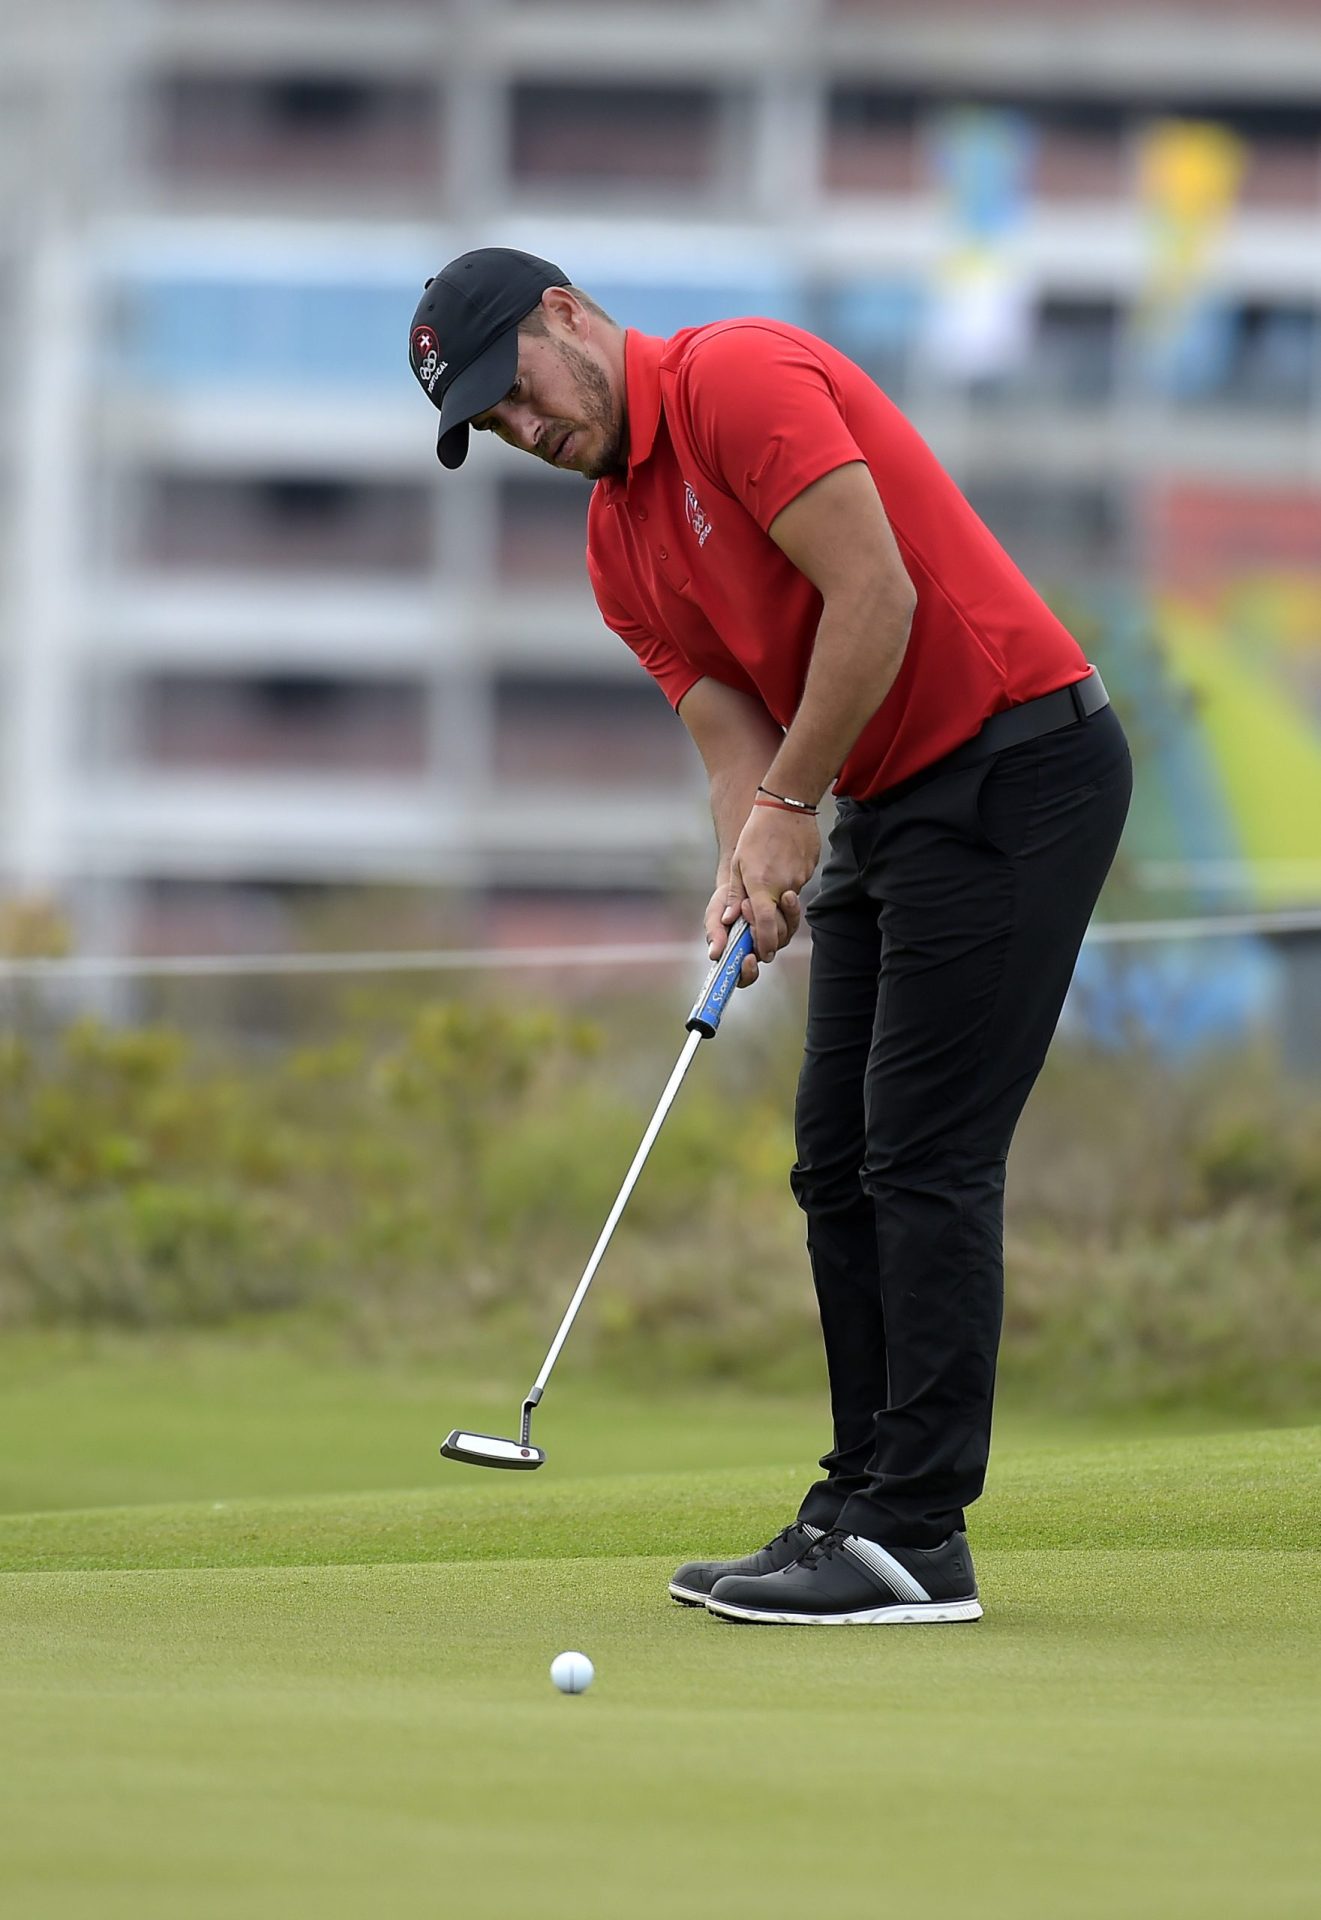 Golfe: Filipe Lima ao ataque, Ricardo Santos em 30º